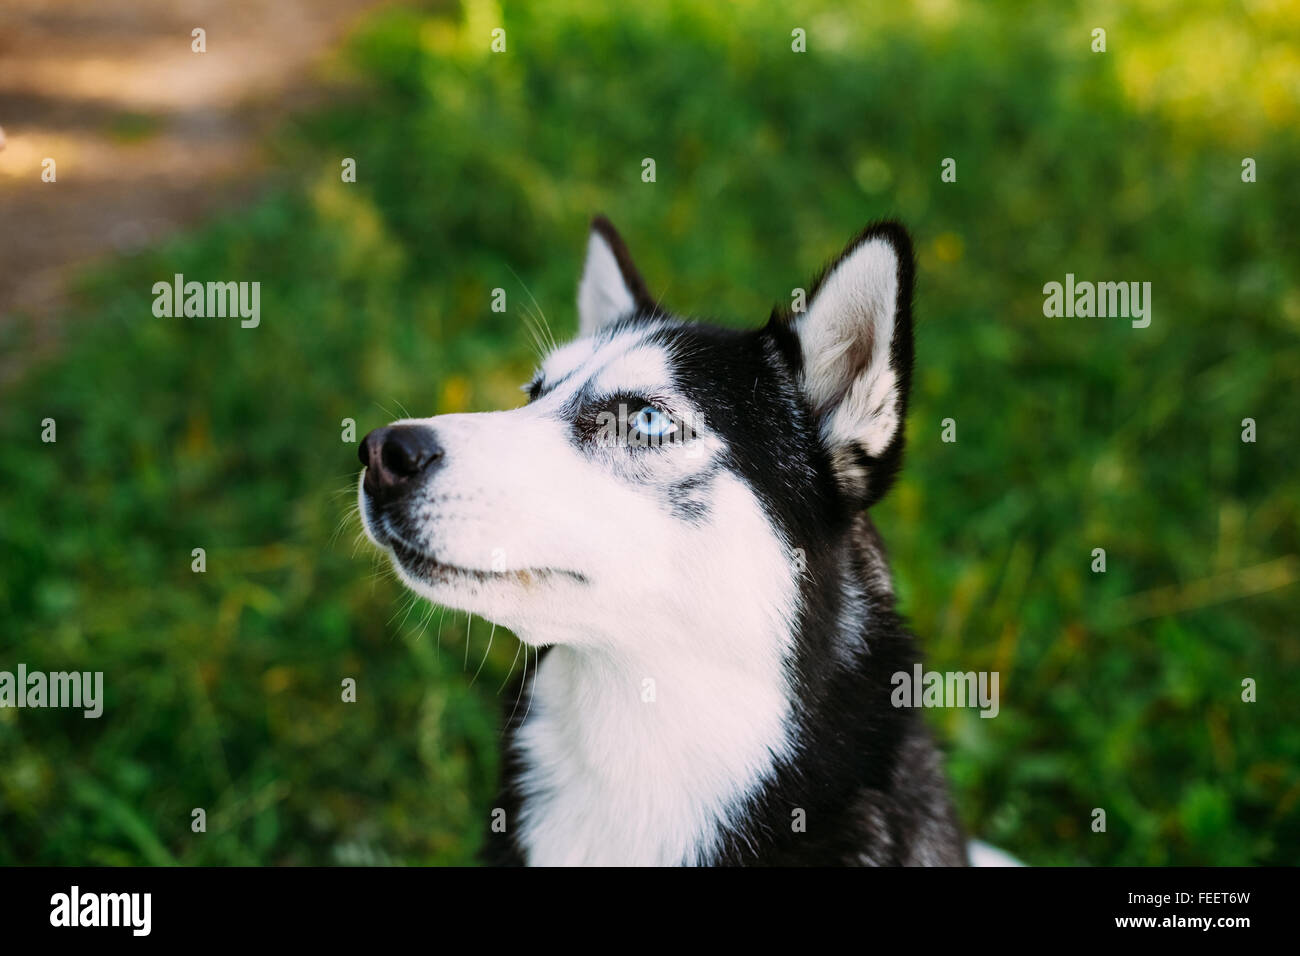 Kopf Gesicht glücklich Husky Junghund mit blauen Augen und intelligentem Ausdruck. In einem grünen Sommer Rasen ruhen. Seitenansicht, close-up. Stockfoto